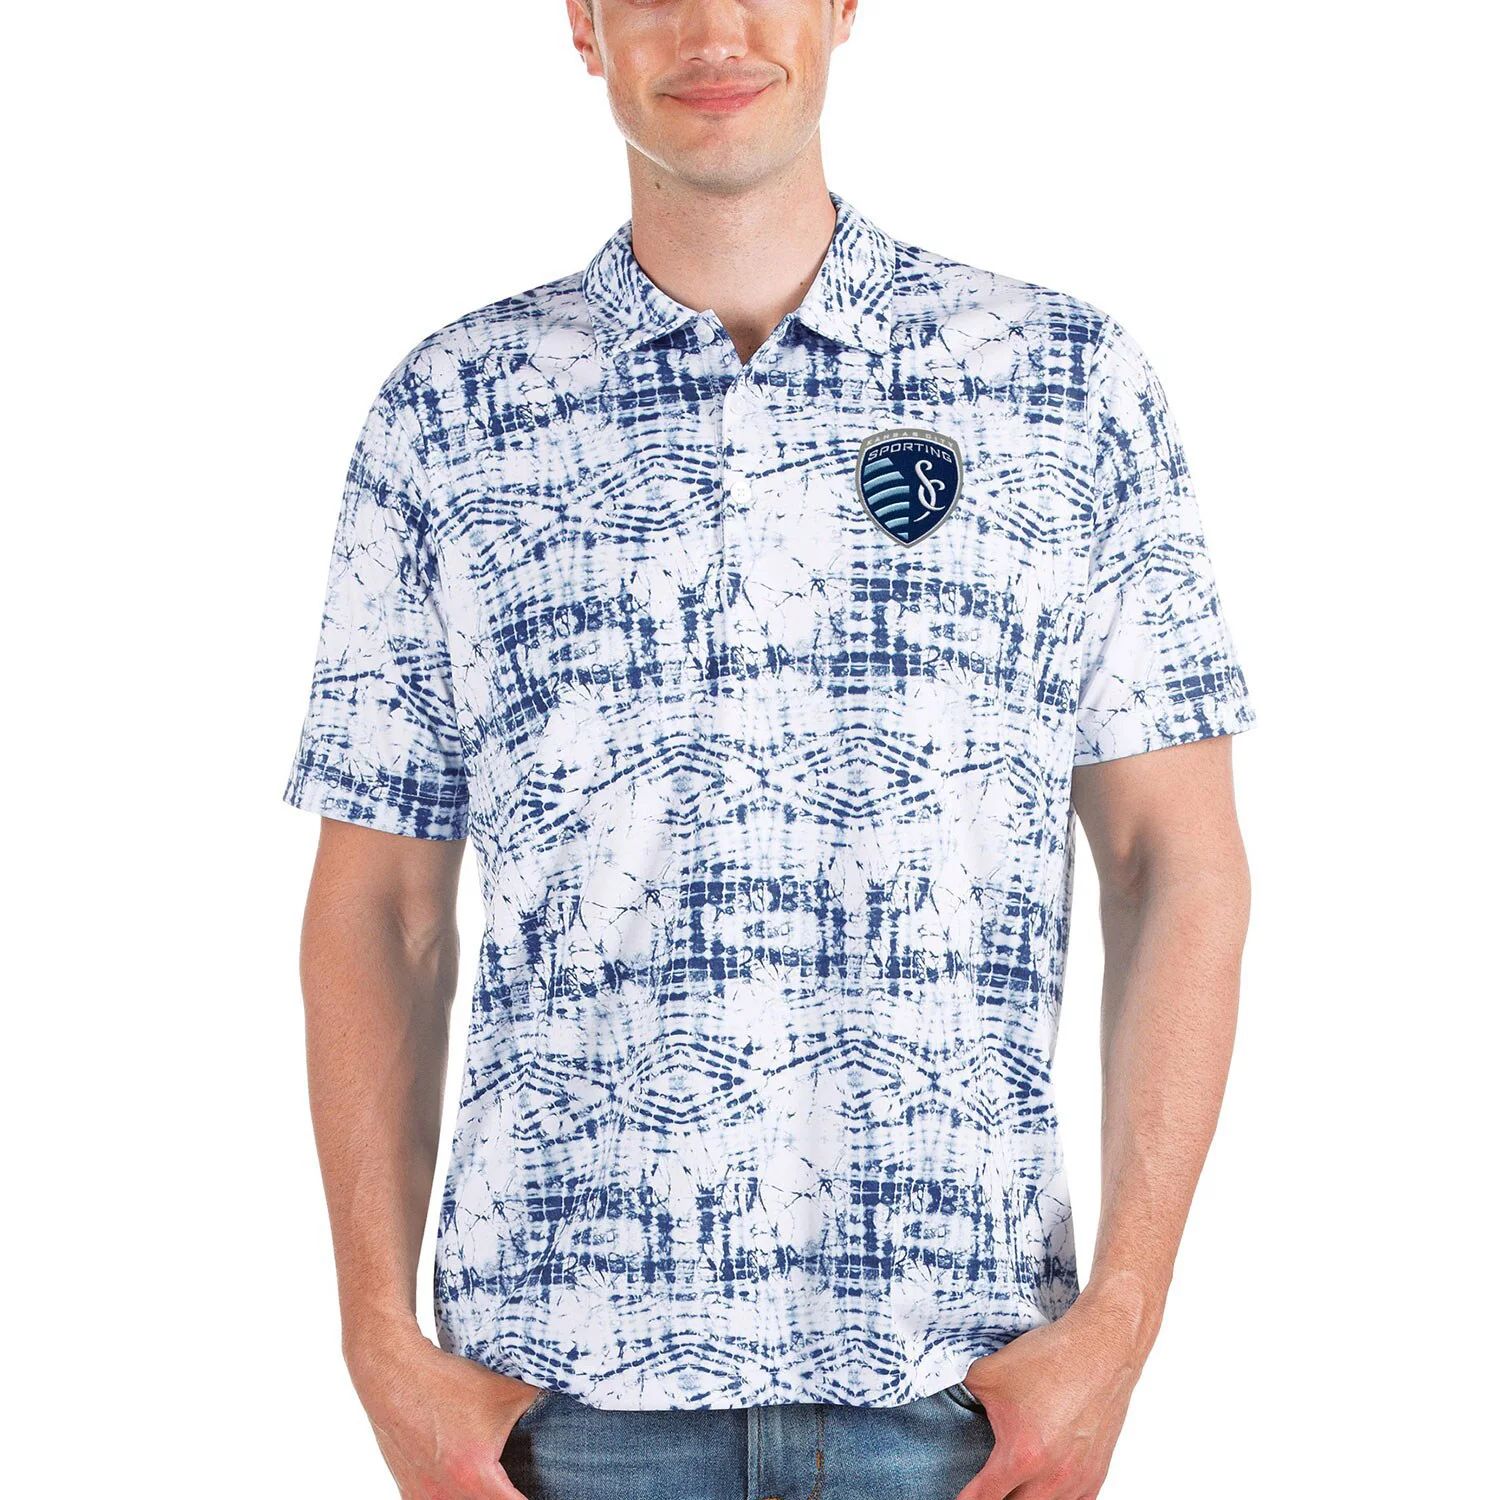 Мужская футболка-поло темно-синего цвета Sporting Kansas City Vivid Antigua